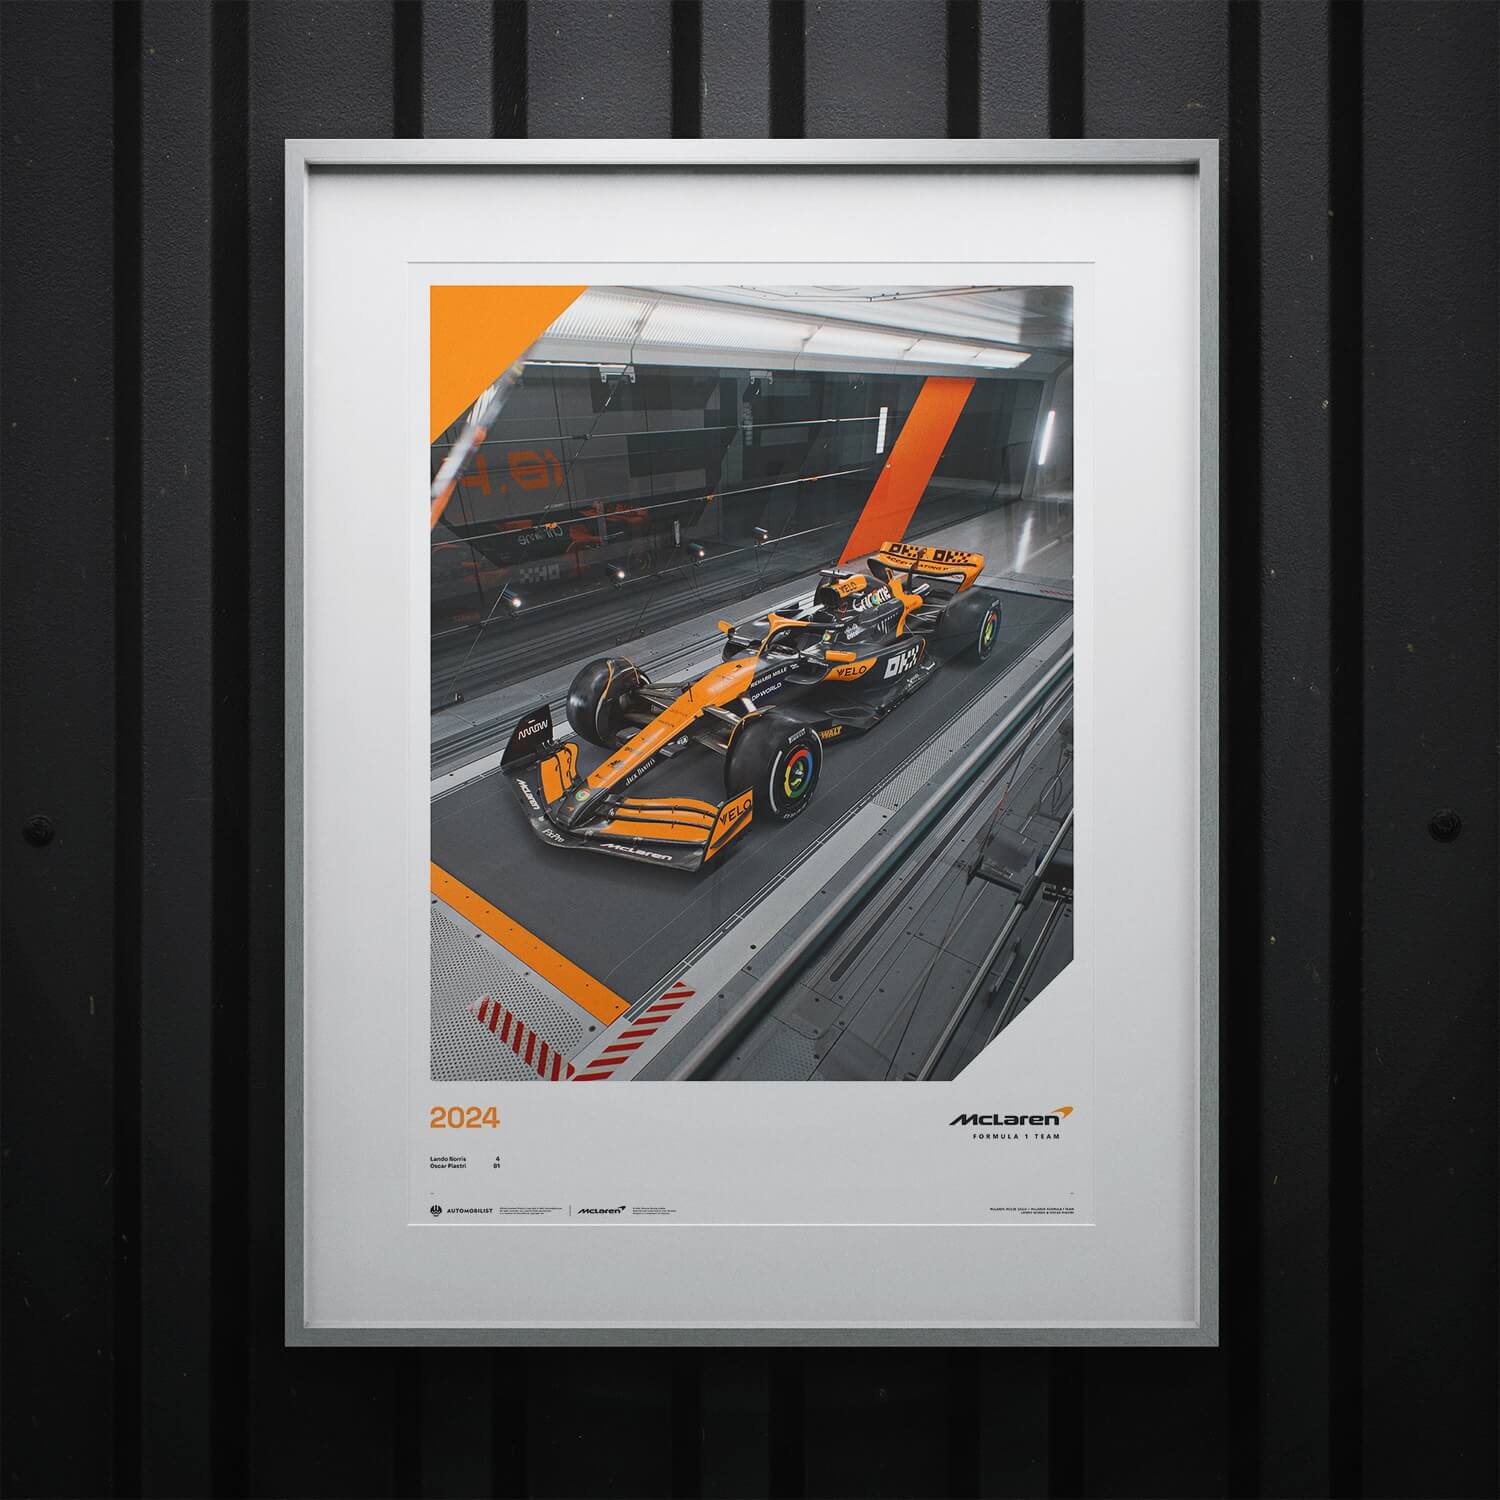 McLaren Formule 1 Team - MCL38 - Quoi qu'il en soit - 2024